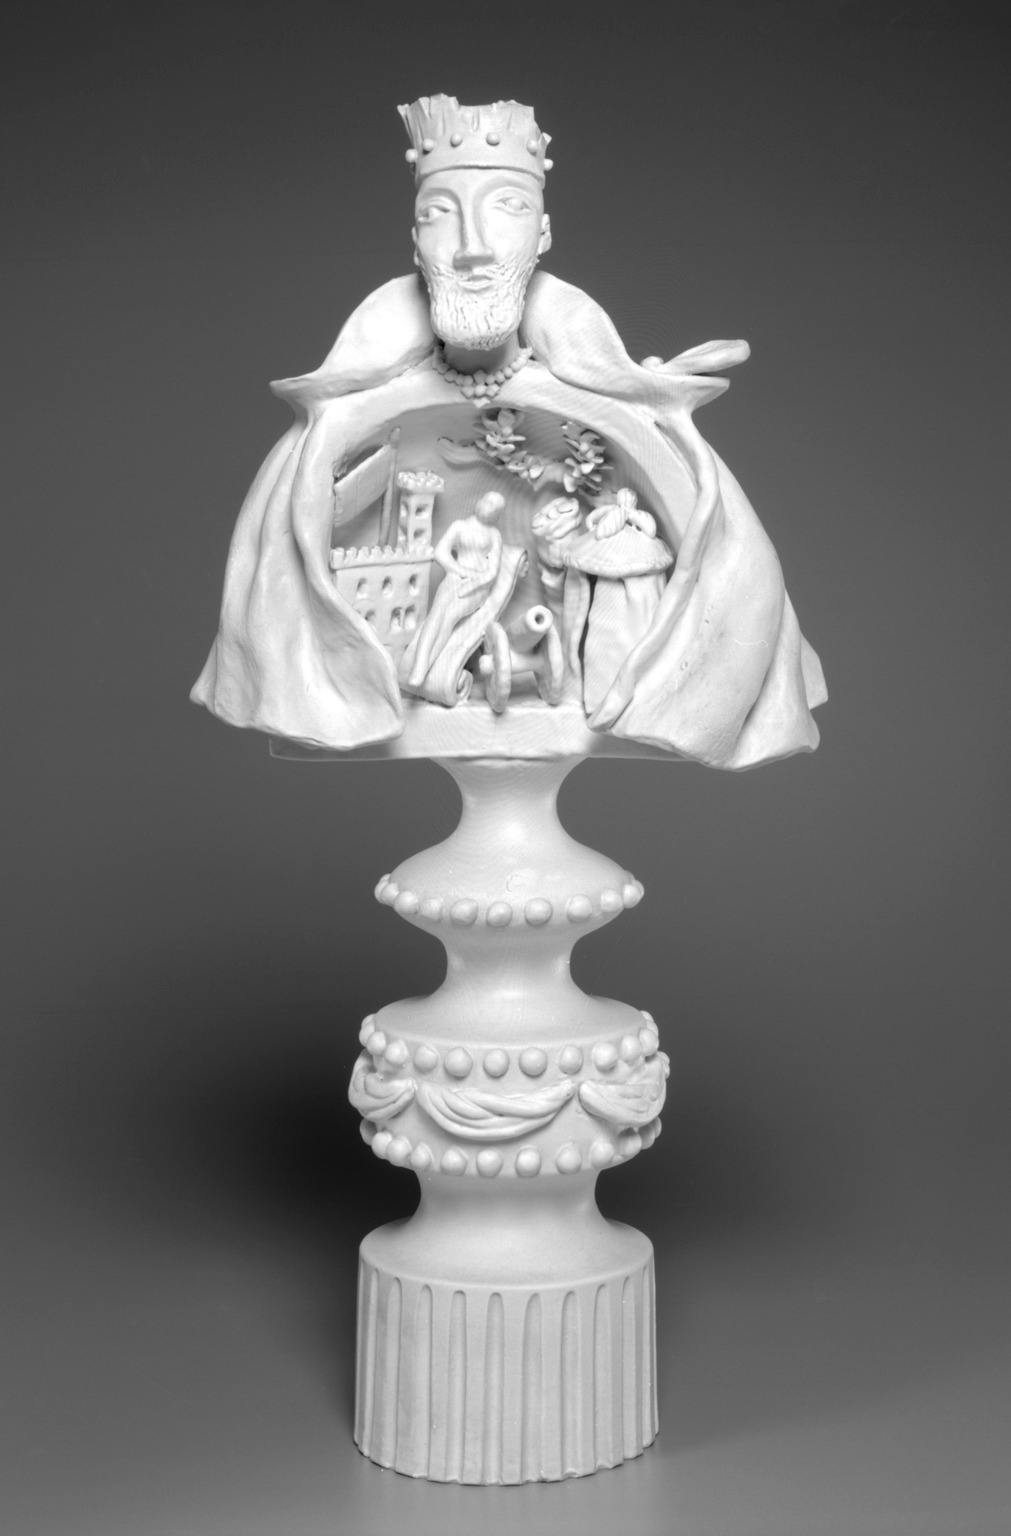 scultura bianca di busto di uomo che al suo interno contiene una scena con figurine